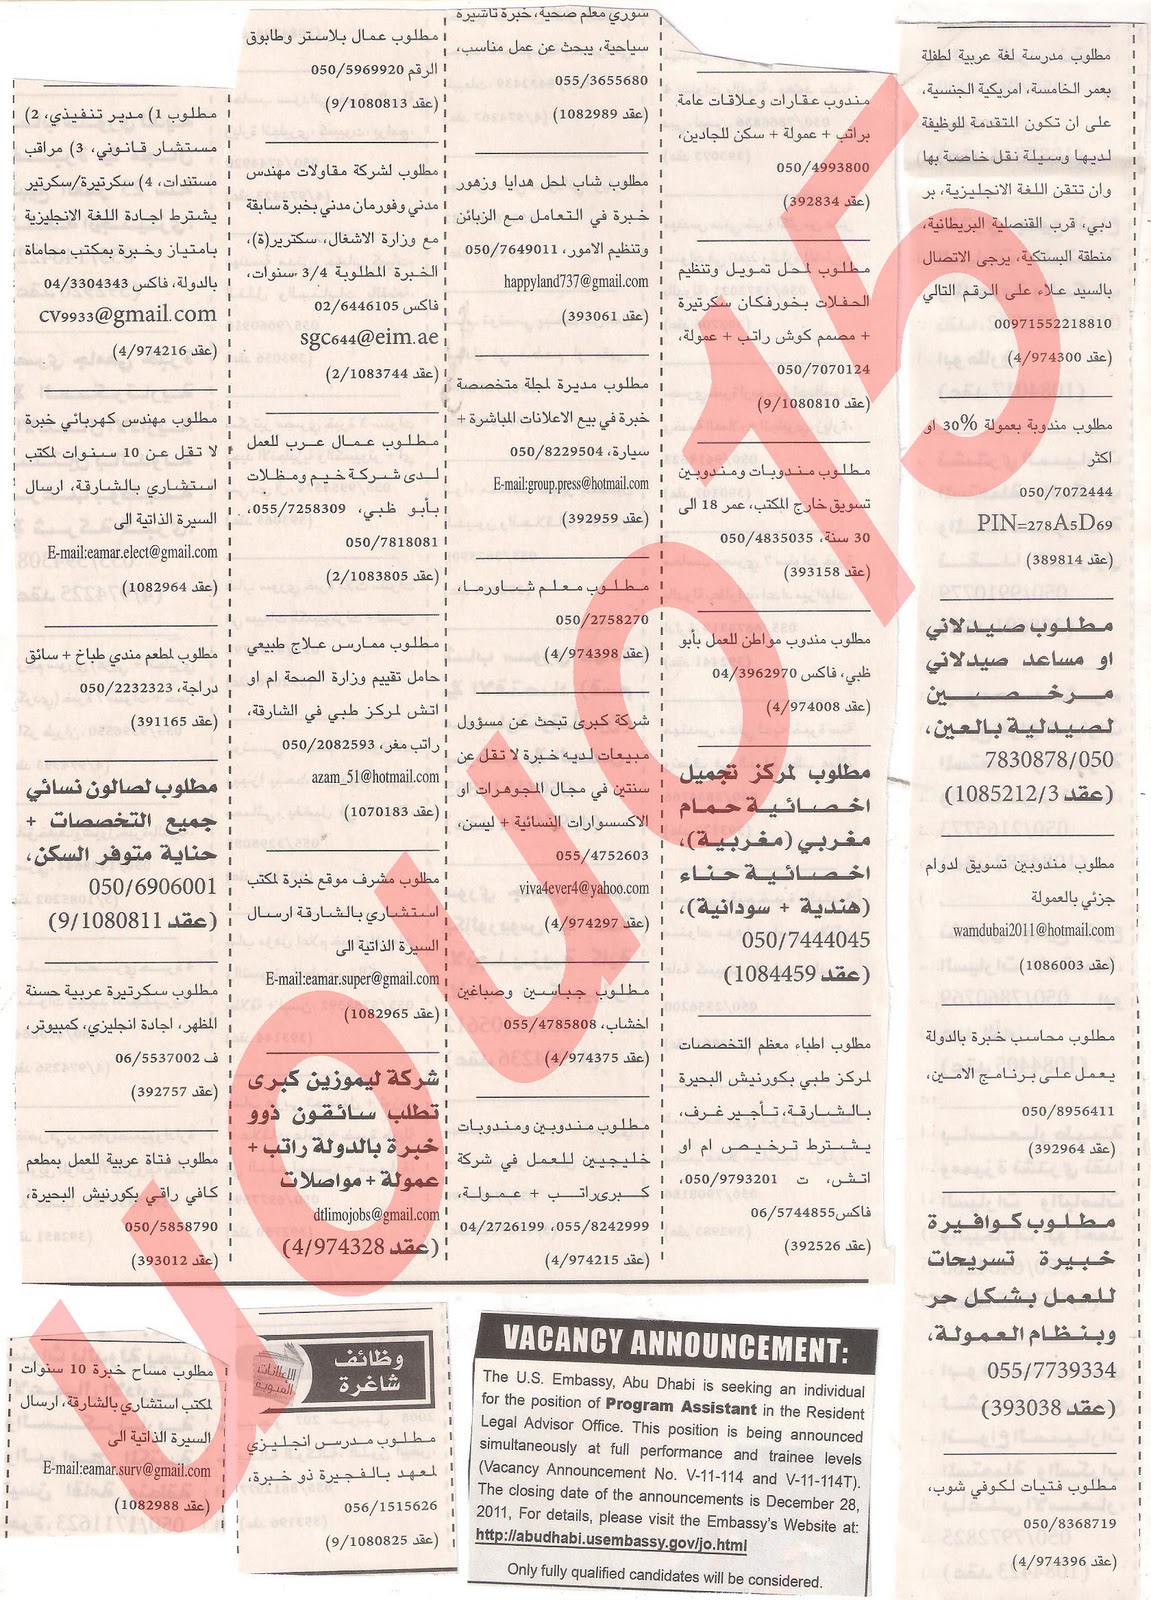 وظائف شاغرة من جريدة الخليج الاربعاء 21\12\2011  Picture+004